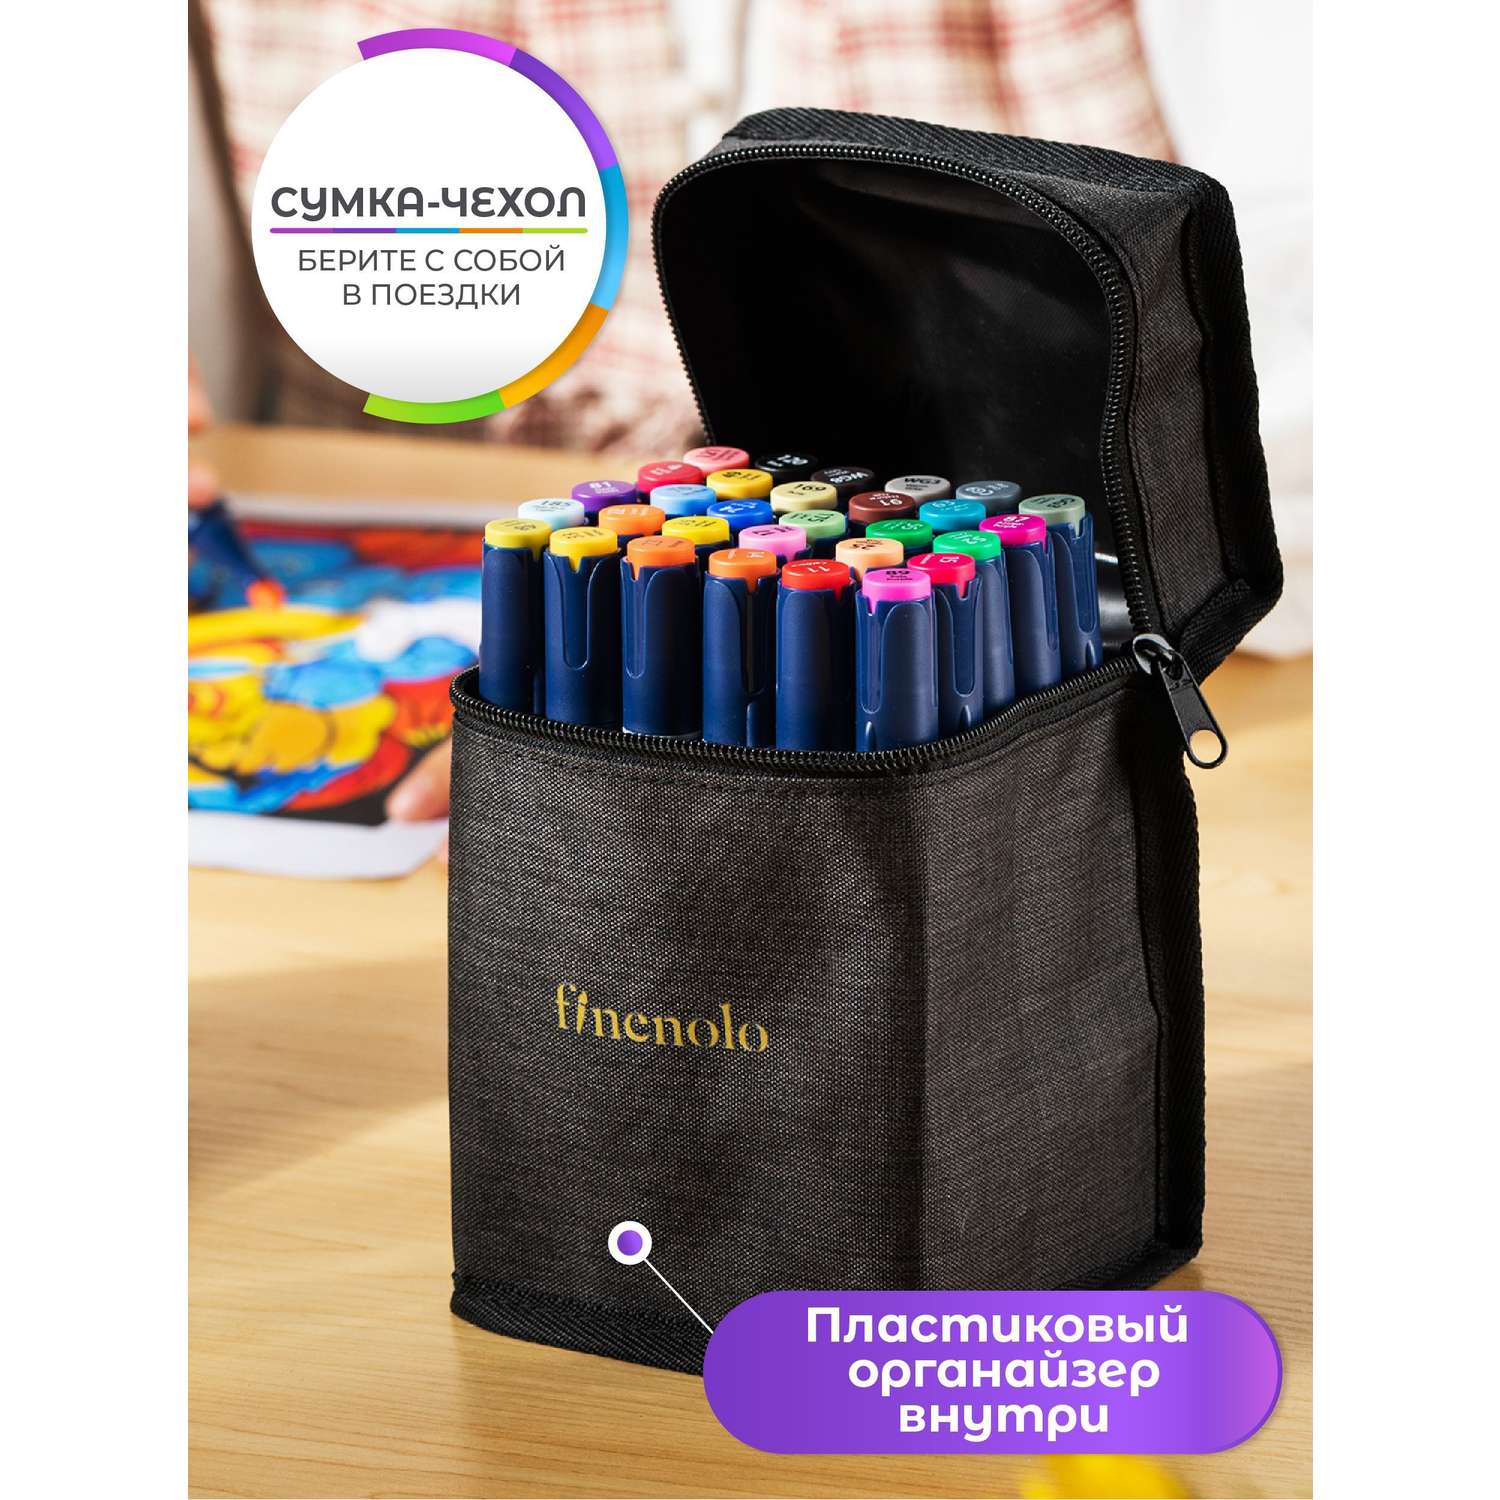 Набор спиртовых маркеров Finenolo 2 пера:кисть+долото 30 цветов в сумке-пенале - фото 4